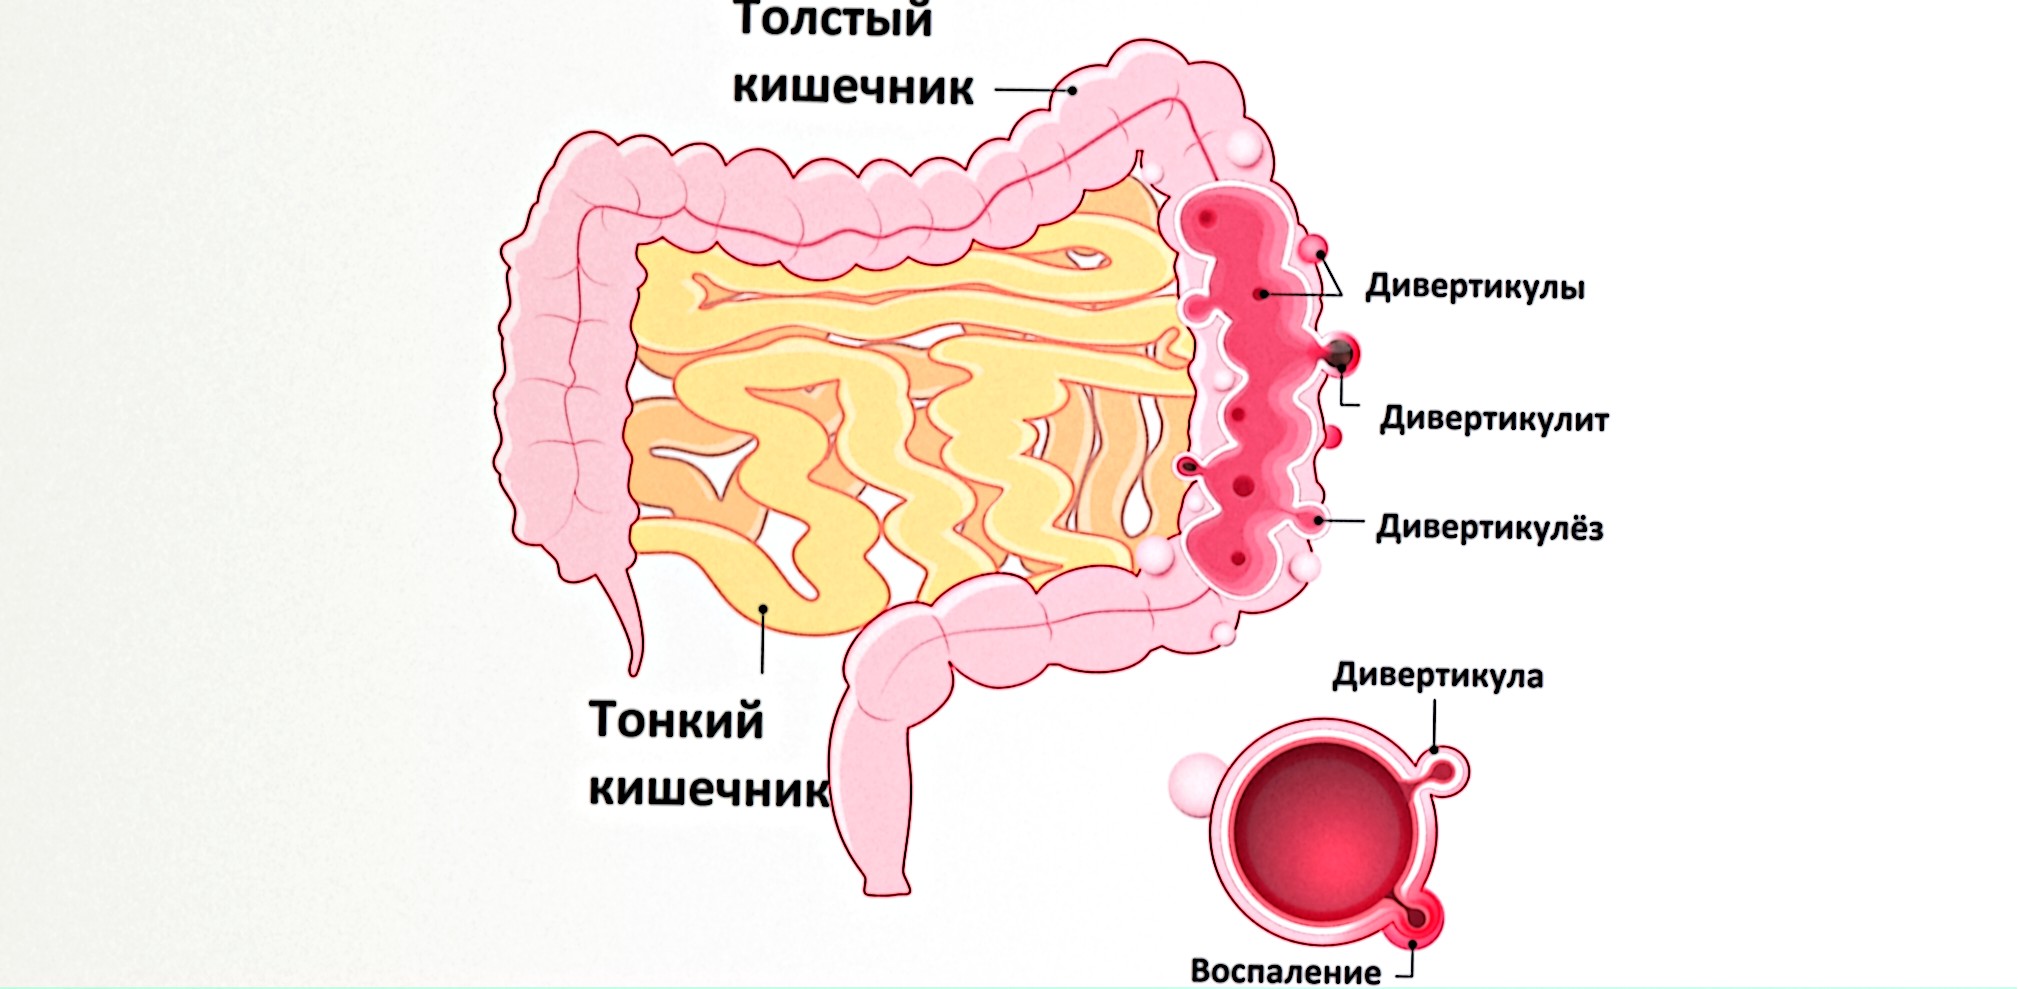 Дивертикулярная болезнь толстой кишки (ДБТК)